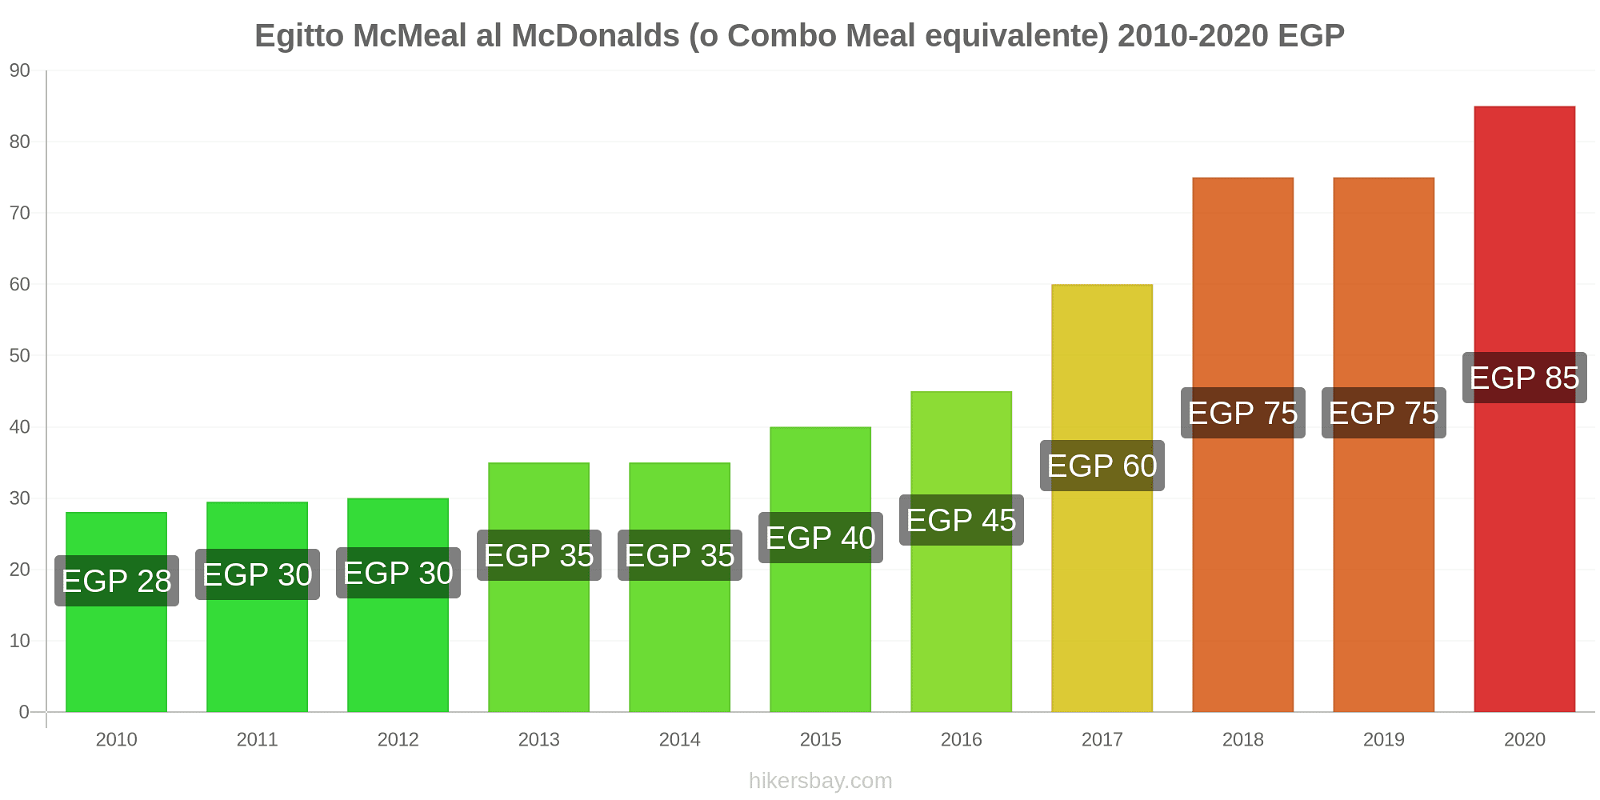 Egitto variazioni di prezzo McMeal al McDonalds (o in un equivalente fastfood) hikersbay.com